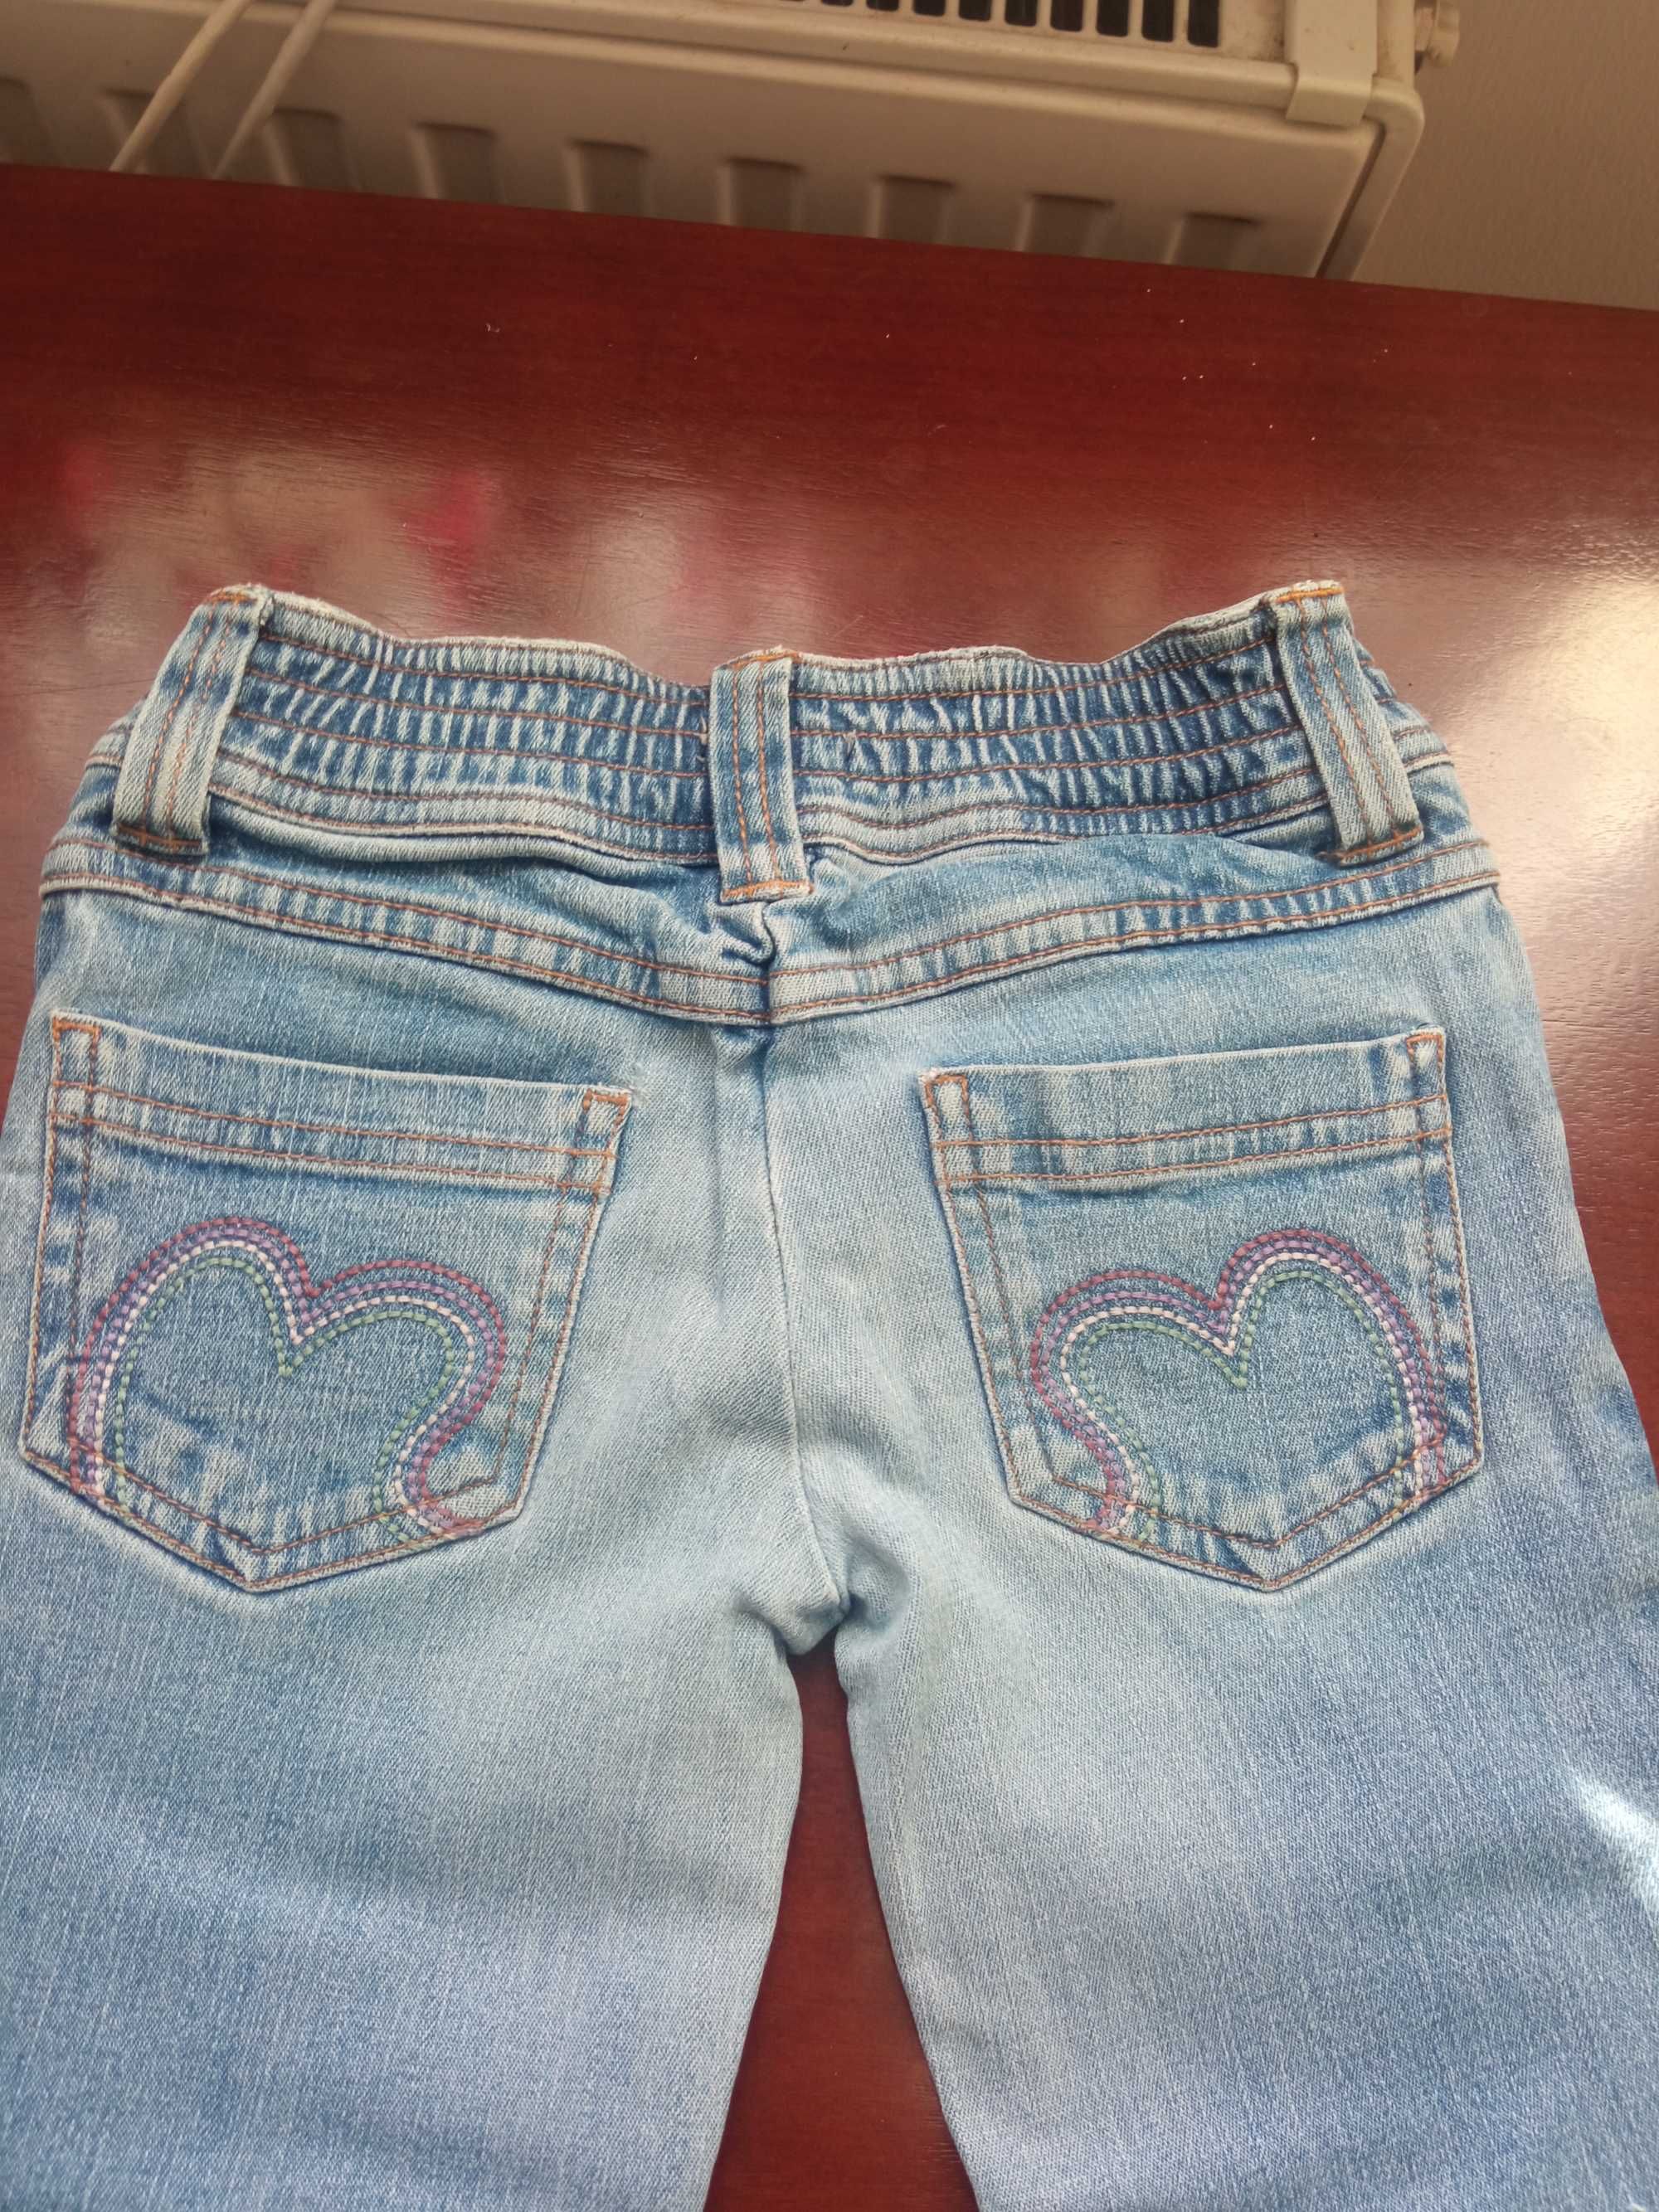 Spodnie  jeans dla dziewczynki R. 110, firma  CQ